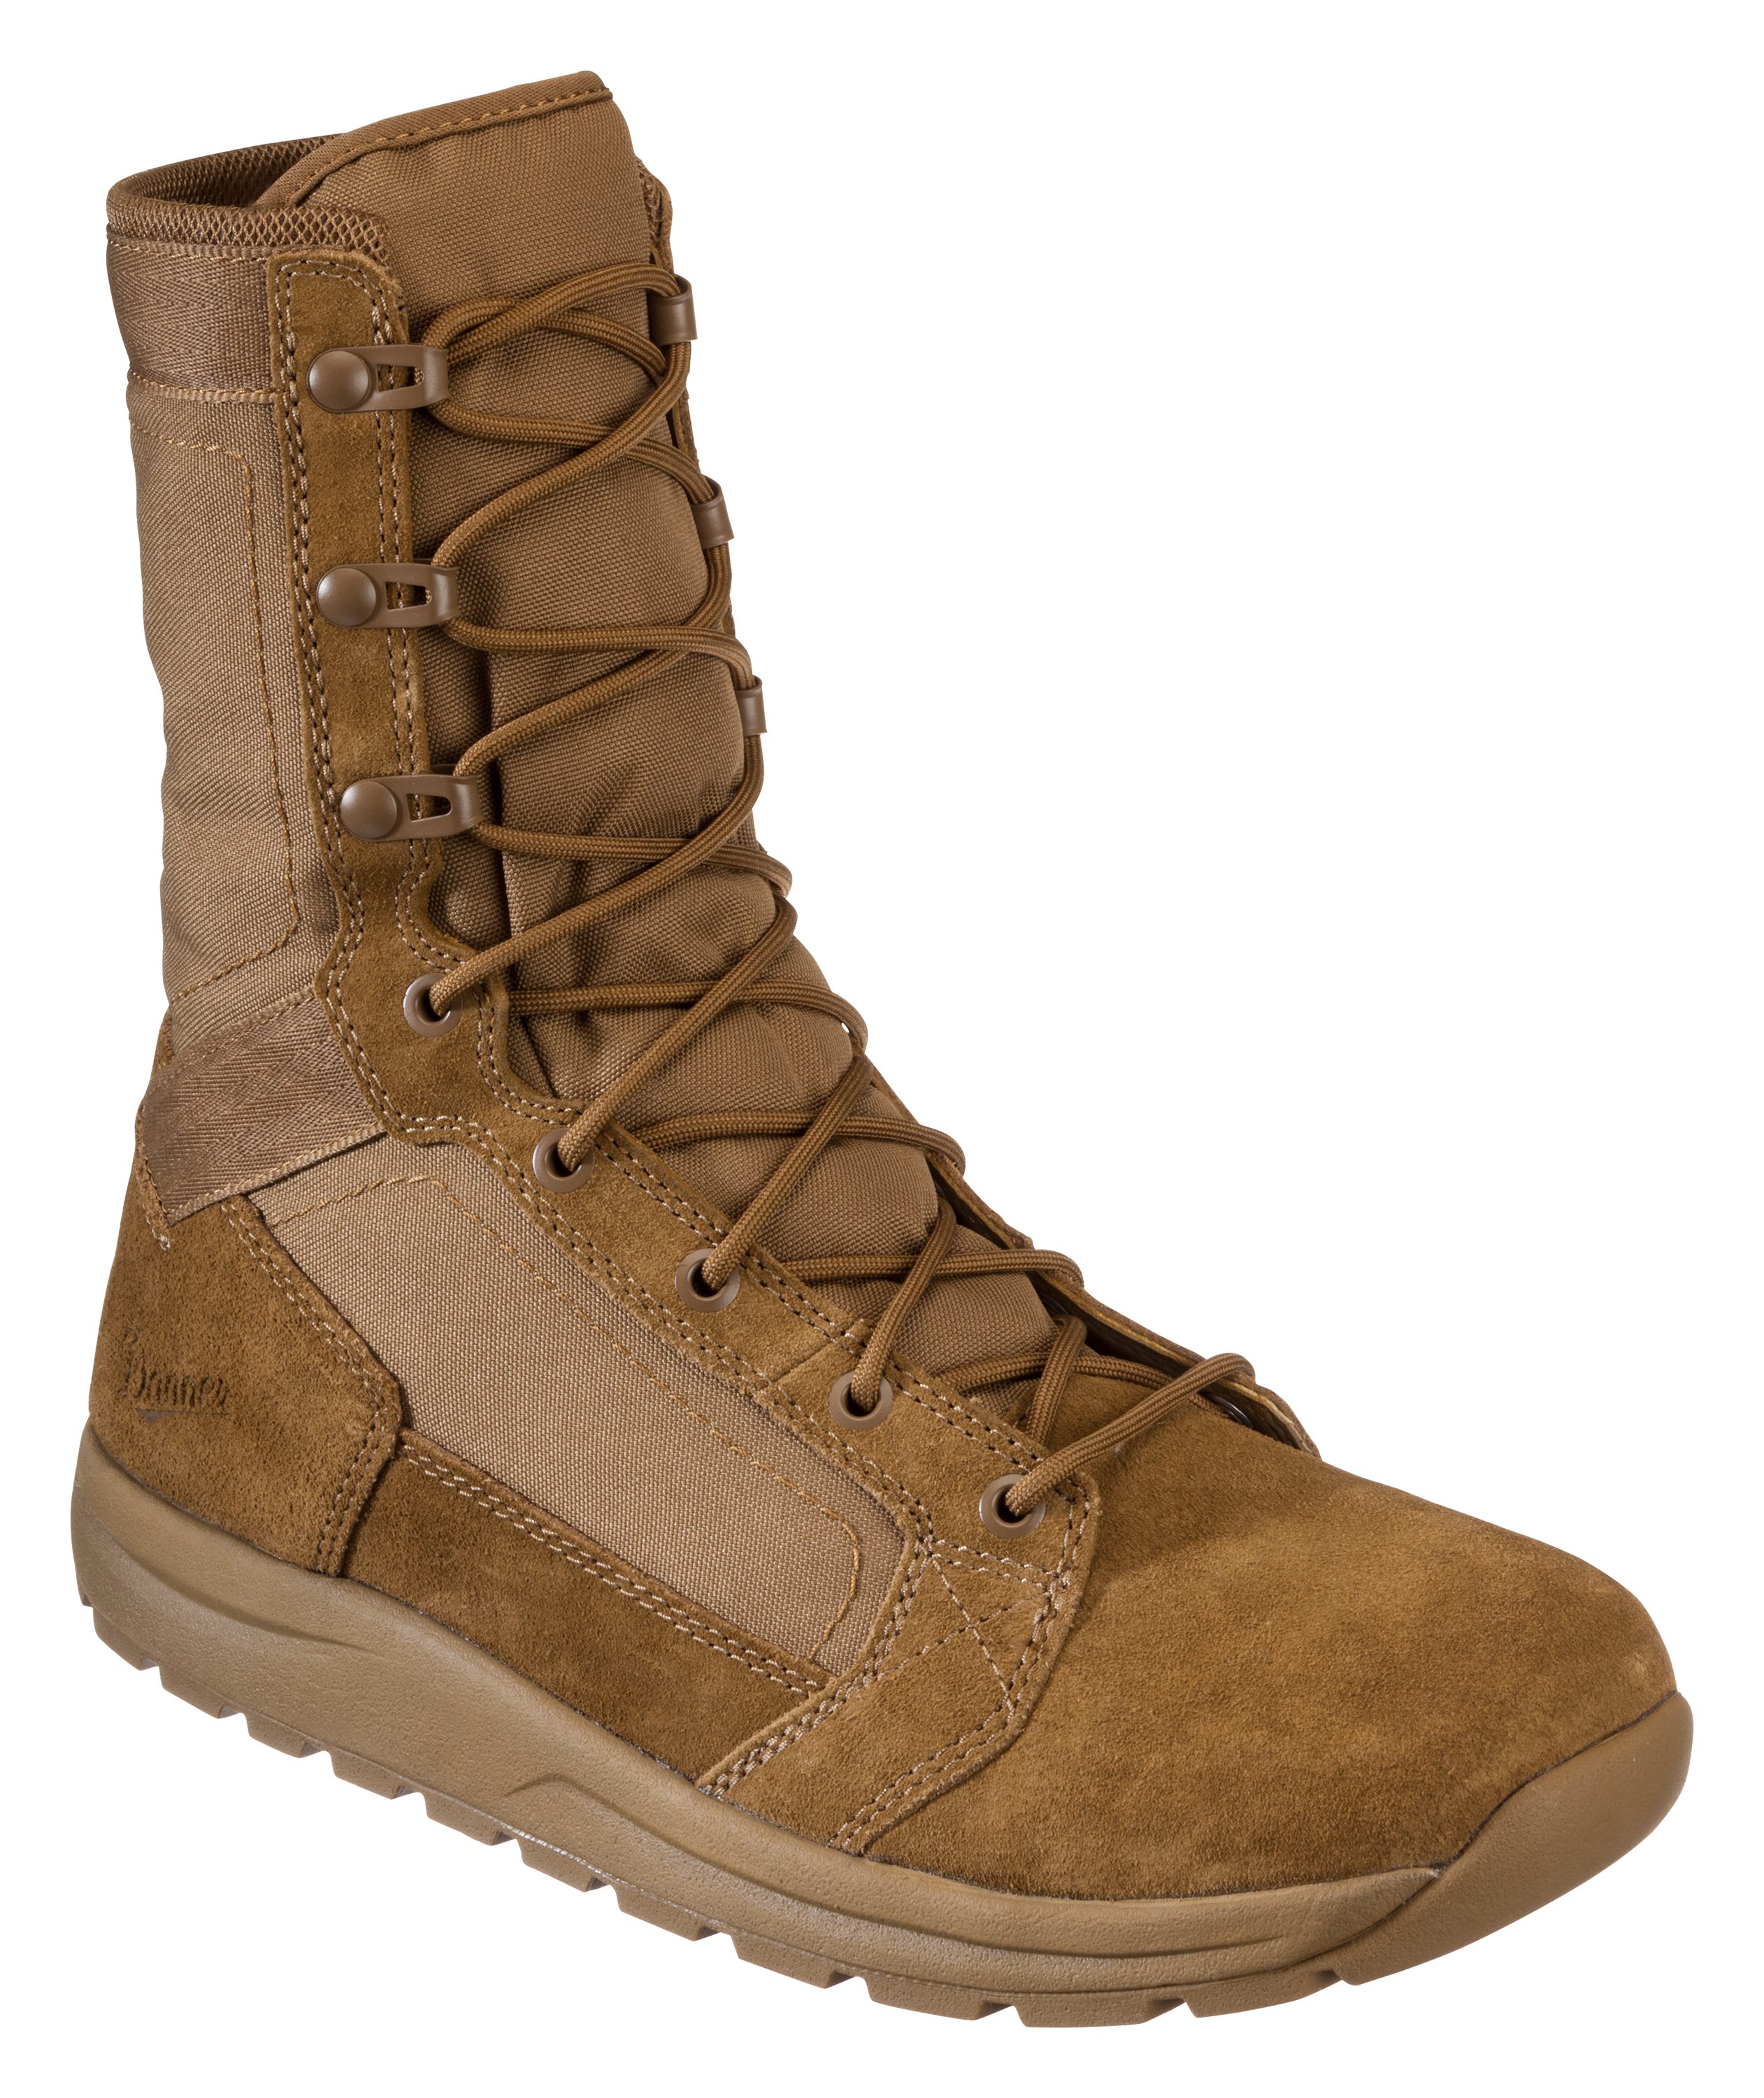 Danner Tachyon Tactical Boots for Men - Coyote - 8M